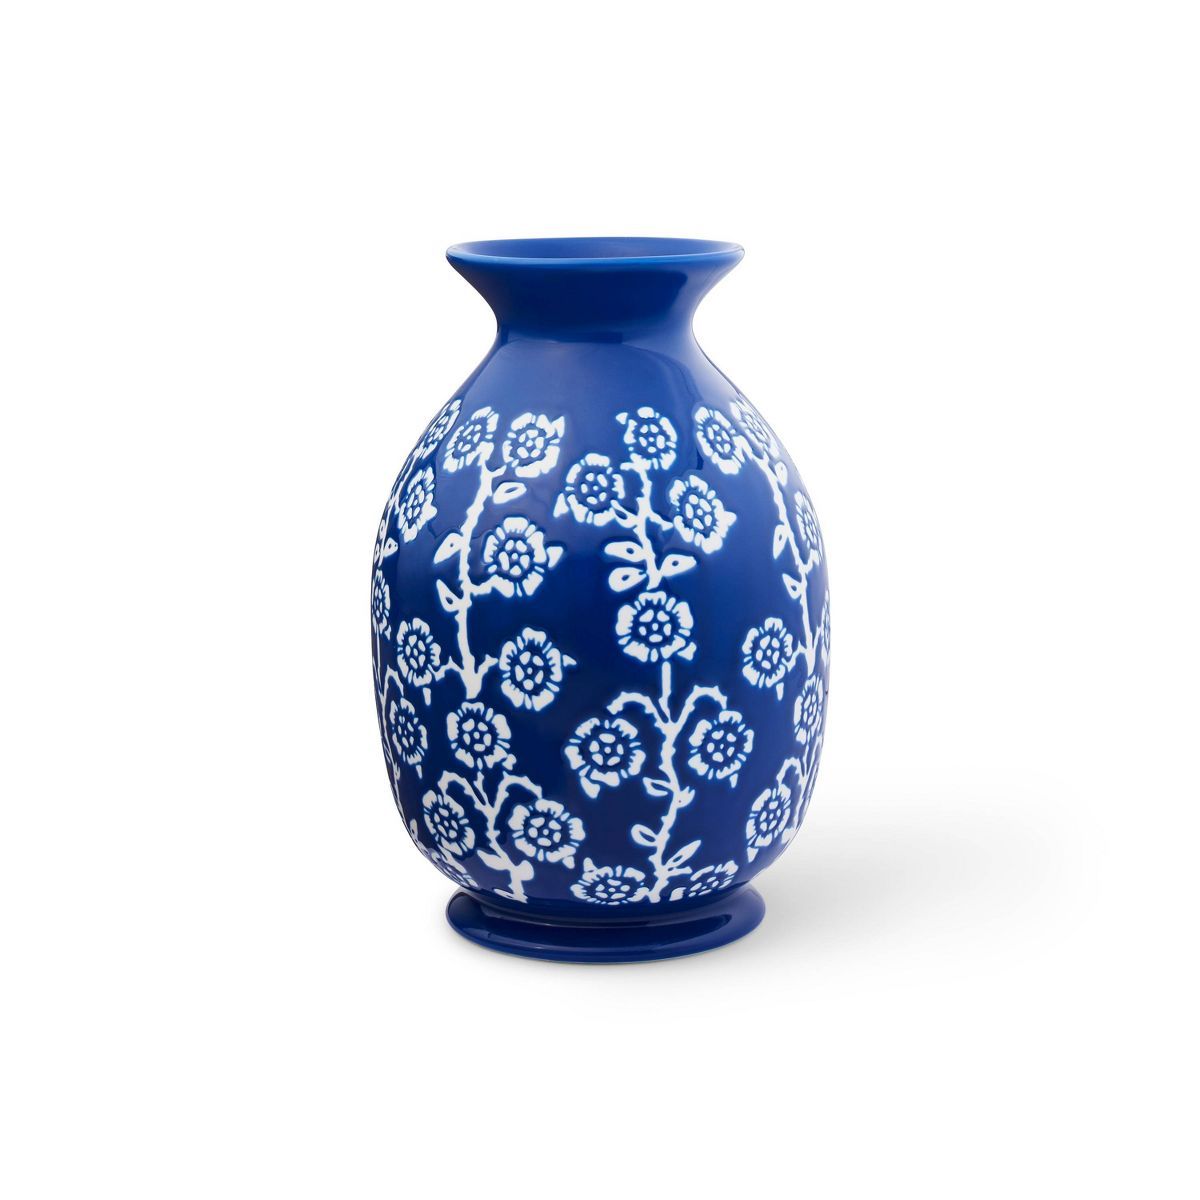 Rose Print Ceramic Vase - Rowing Blazers x Target | Target